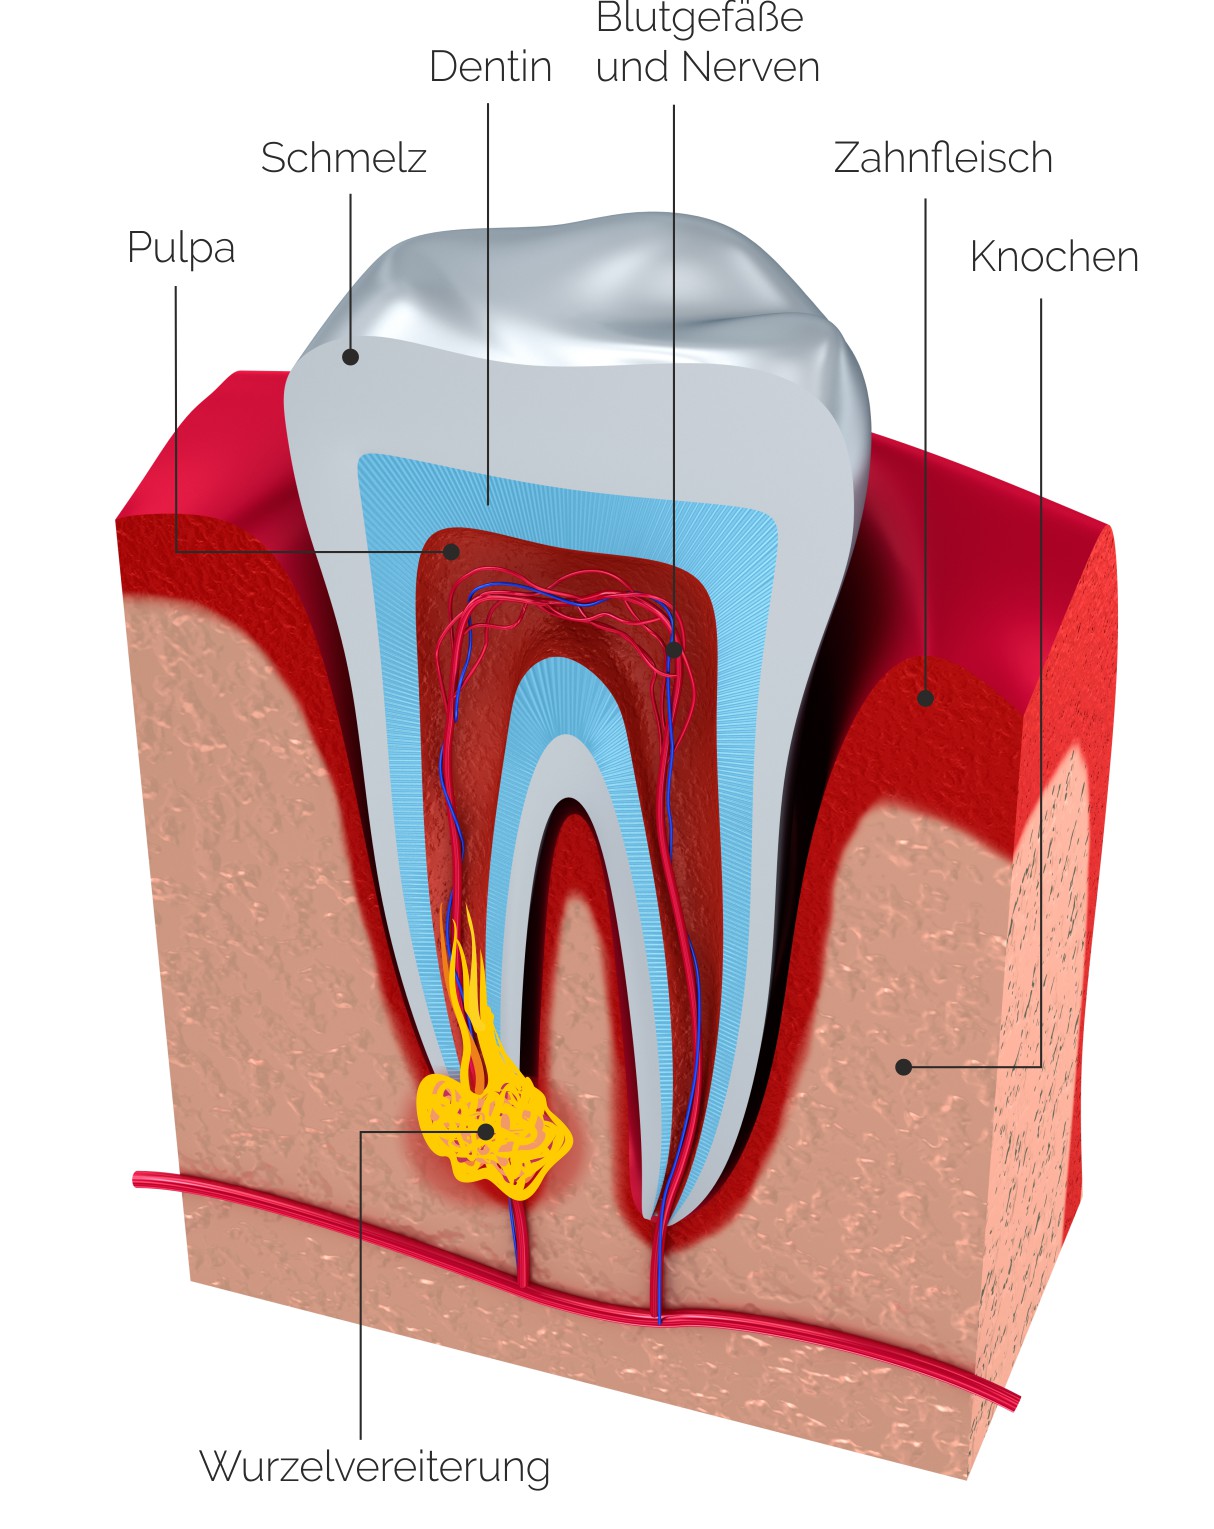 Zahnarztpraxis Roetgen Wurzelkanalbehandlung Alternative Zahnverlust